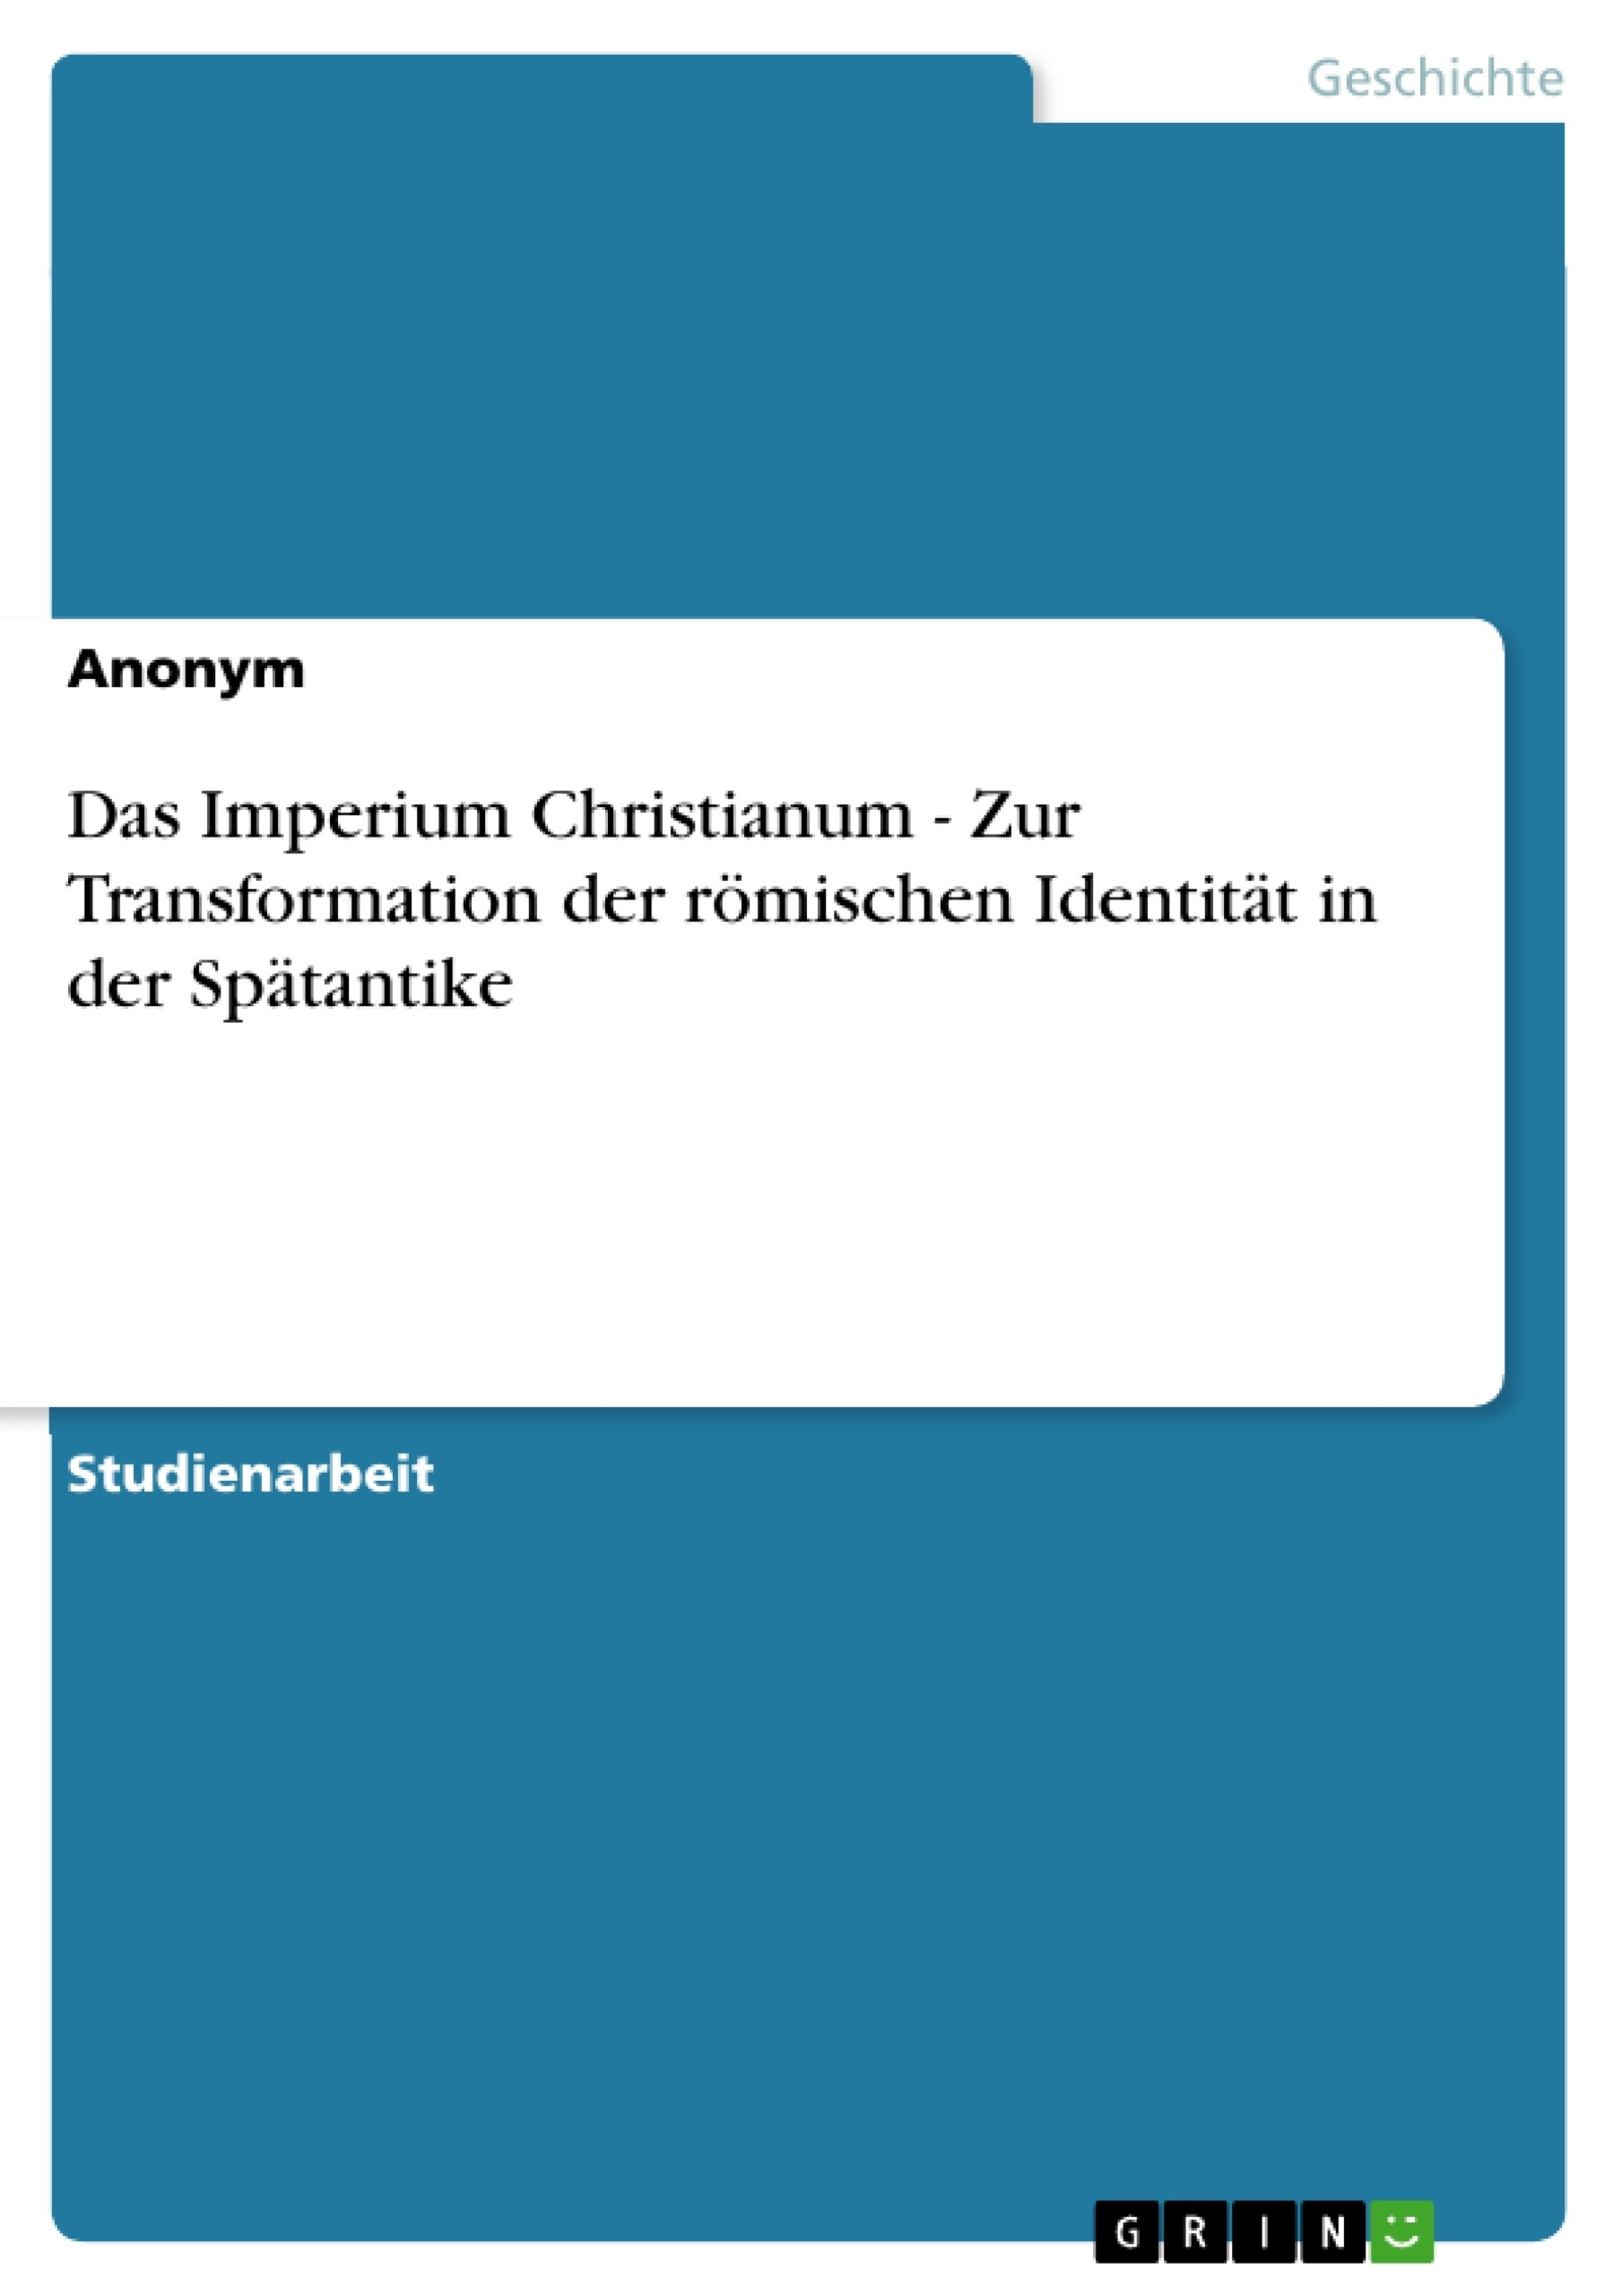 Title: Das Imperium Christianum - Zur Transformation der römischen Identität in der Spätantike